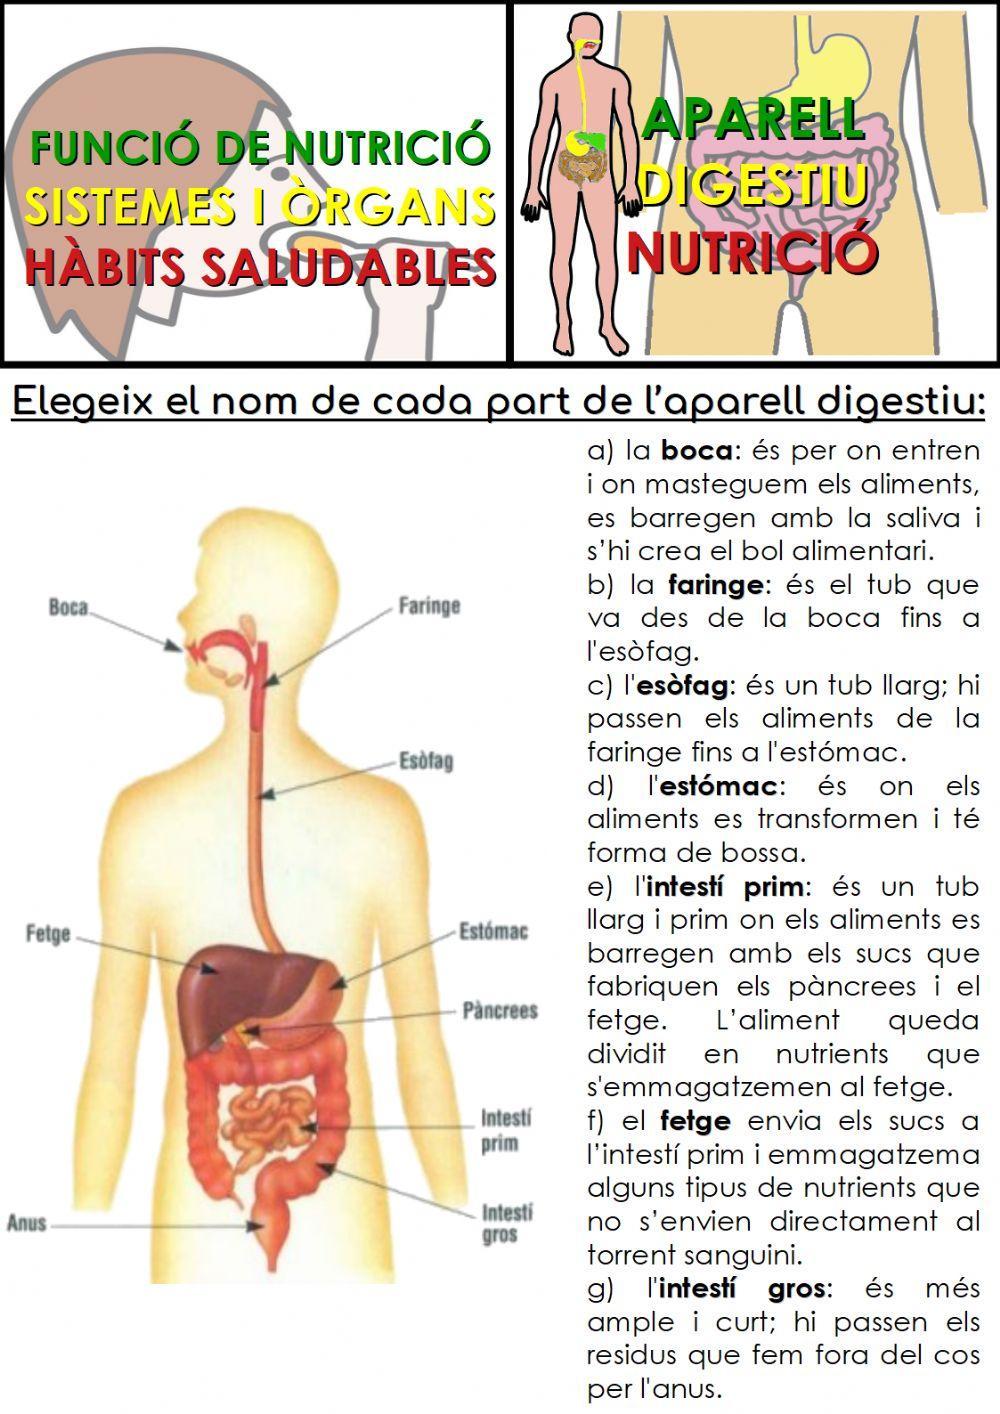 Organs de l'aparell digestiu